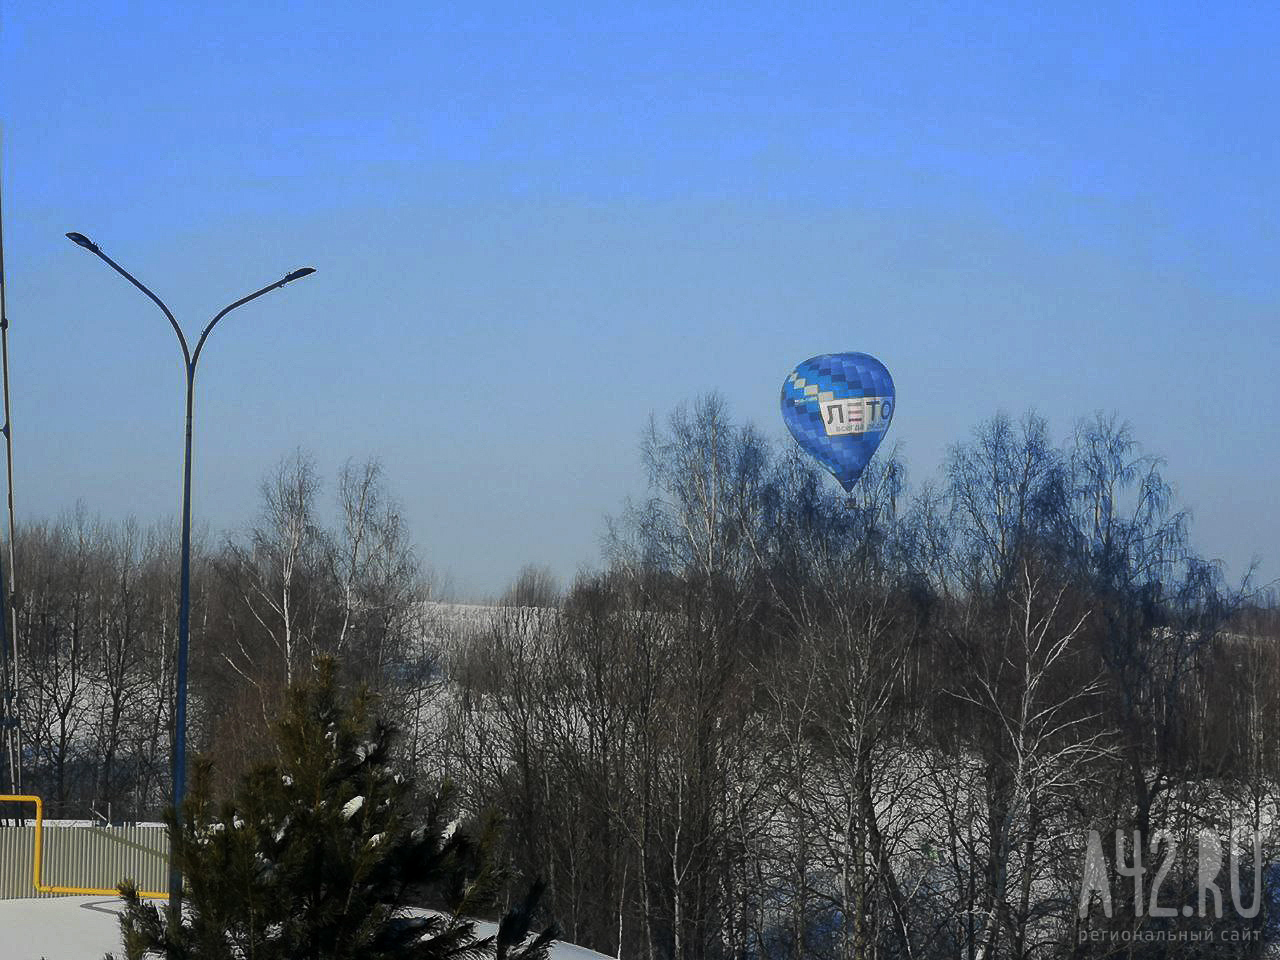 Путешественники Фёдор Конюхов и Иван Меняйло установили мировой рекорд по дальности беспосадочного перелёта на воздушном шаре